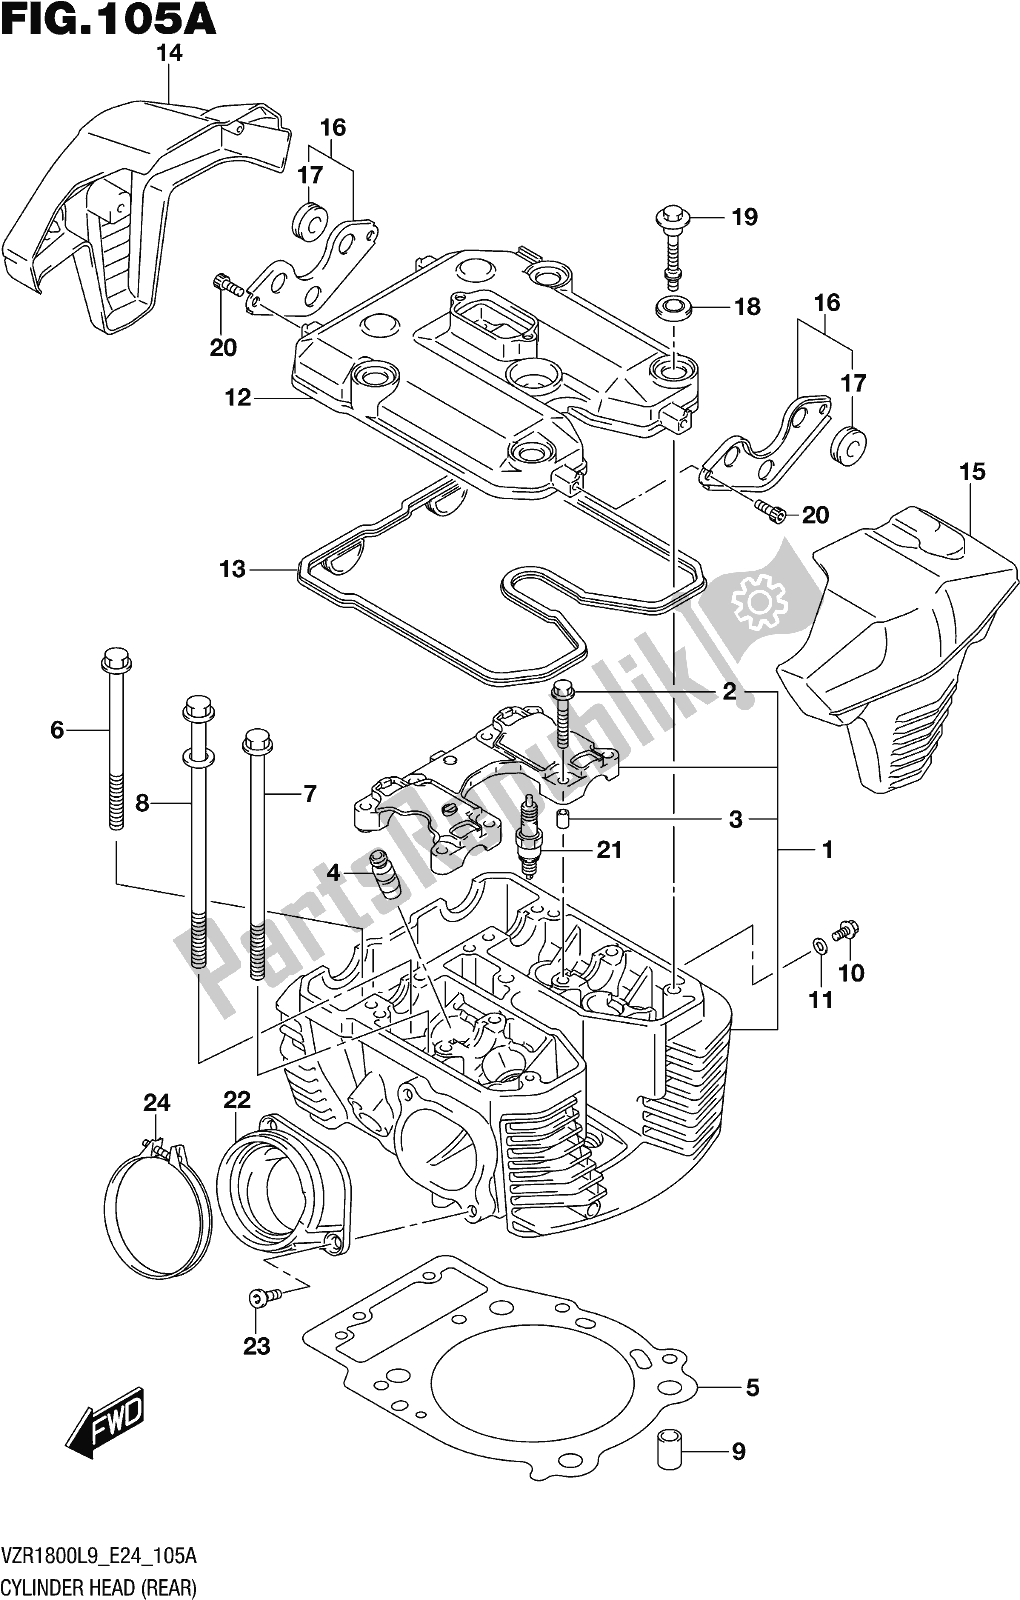 Todas las partes para Fig. 105a Cylinder Head (rear) (vzr1800l9 E24) de Suzuki VZR 1800 2019